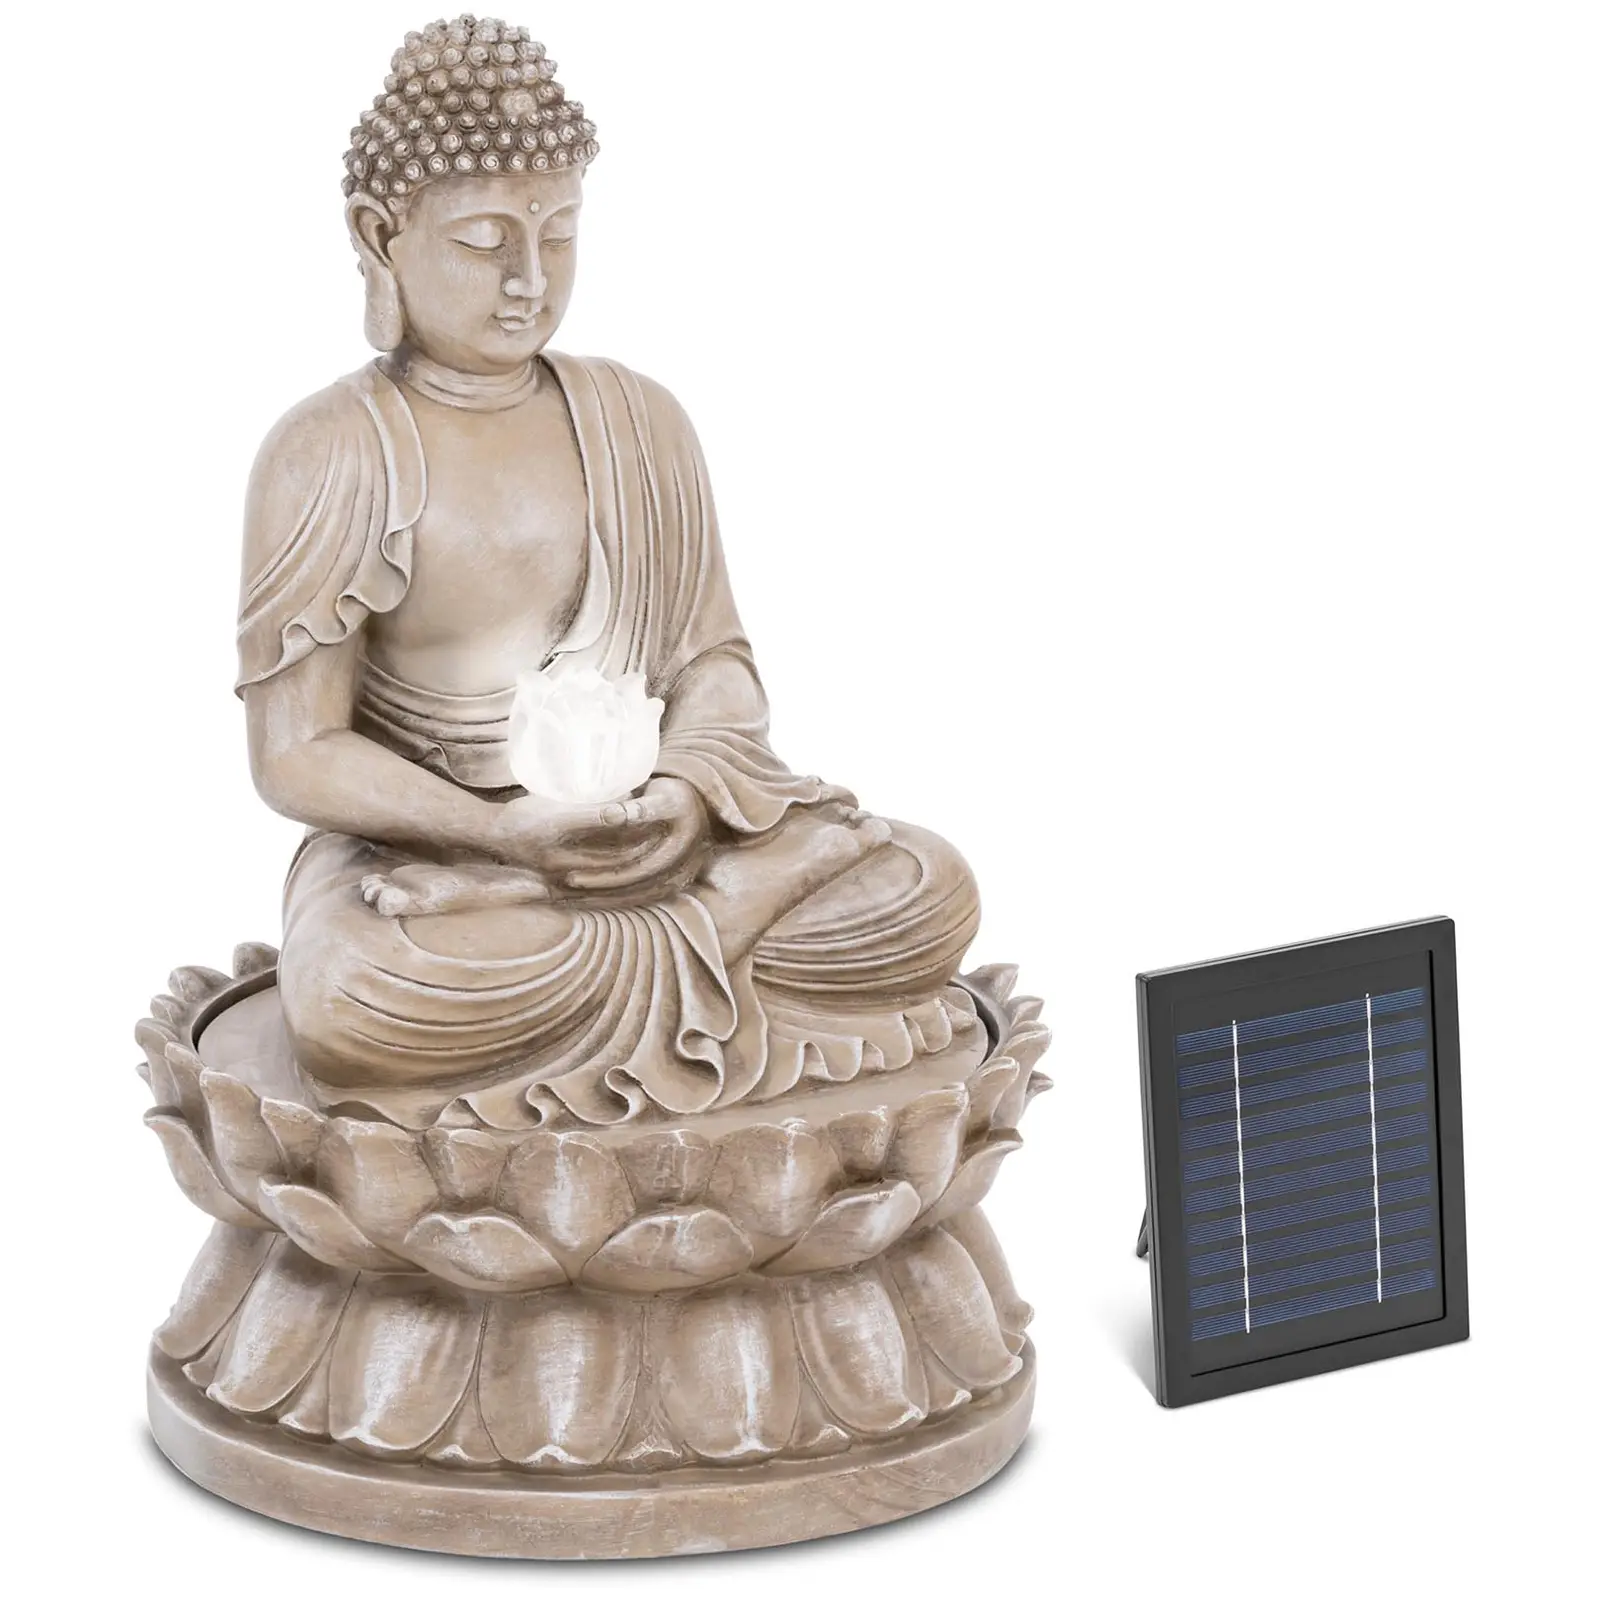 Fuente de jardín solar - Buda sentado - iluminación LED